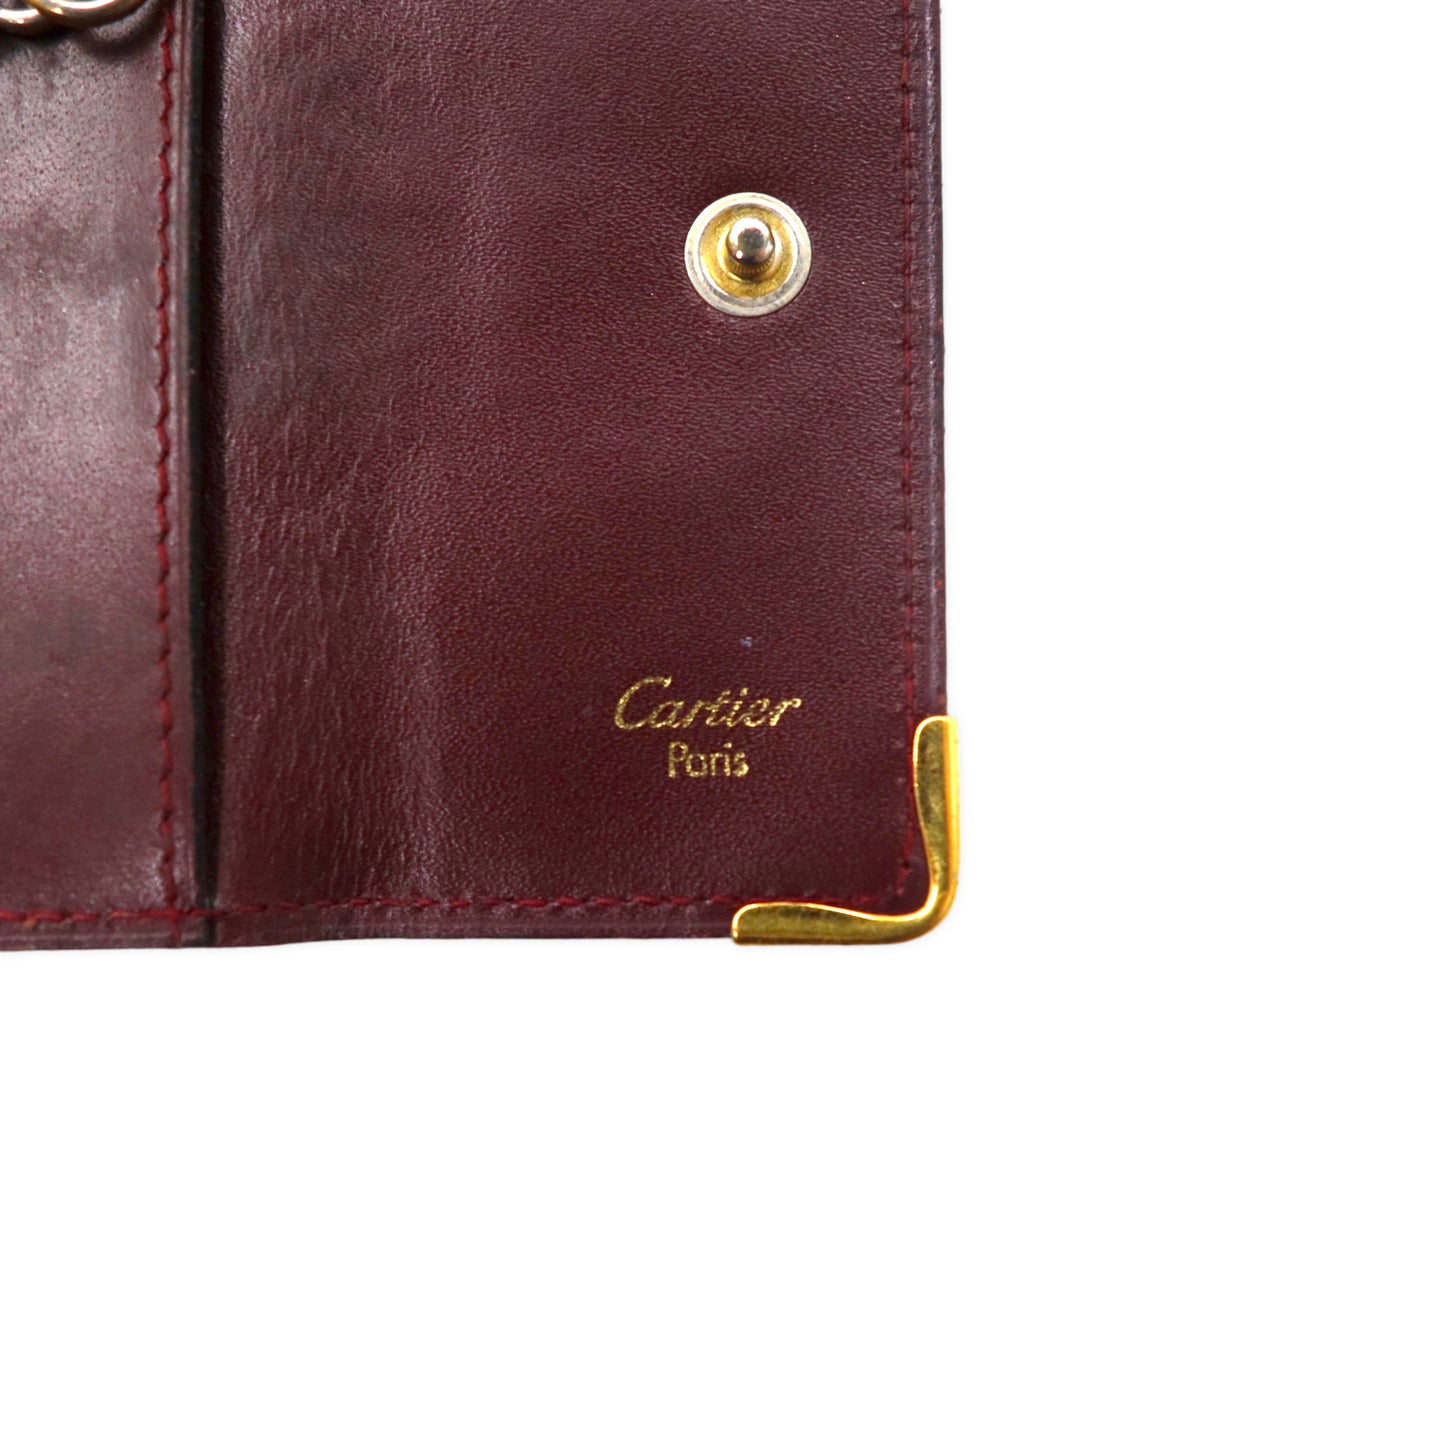 Cartier オールド マストライン 4連 キーケース ボルドー レザー イタリア製